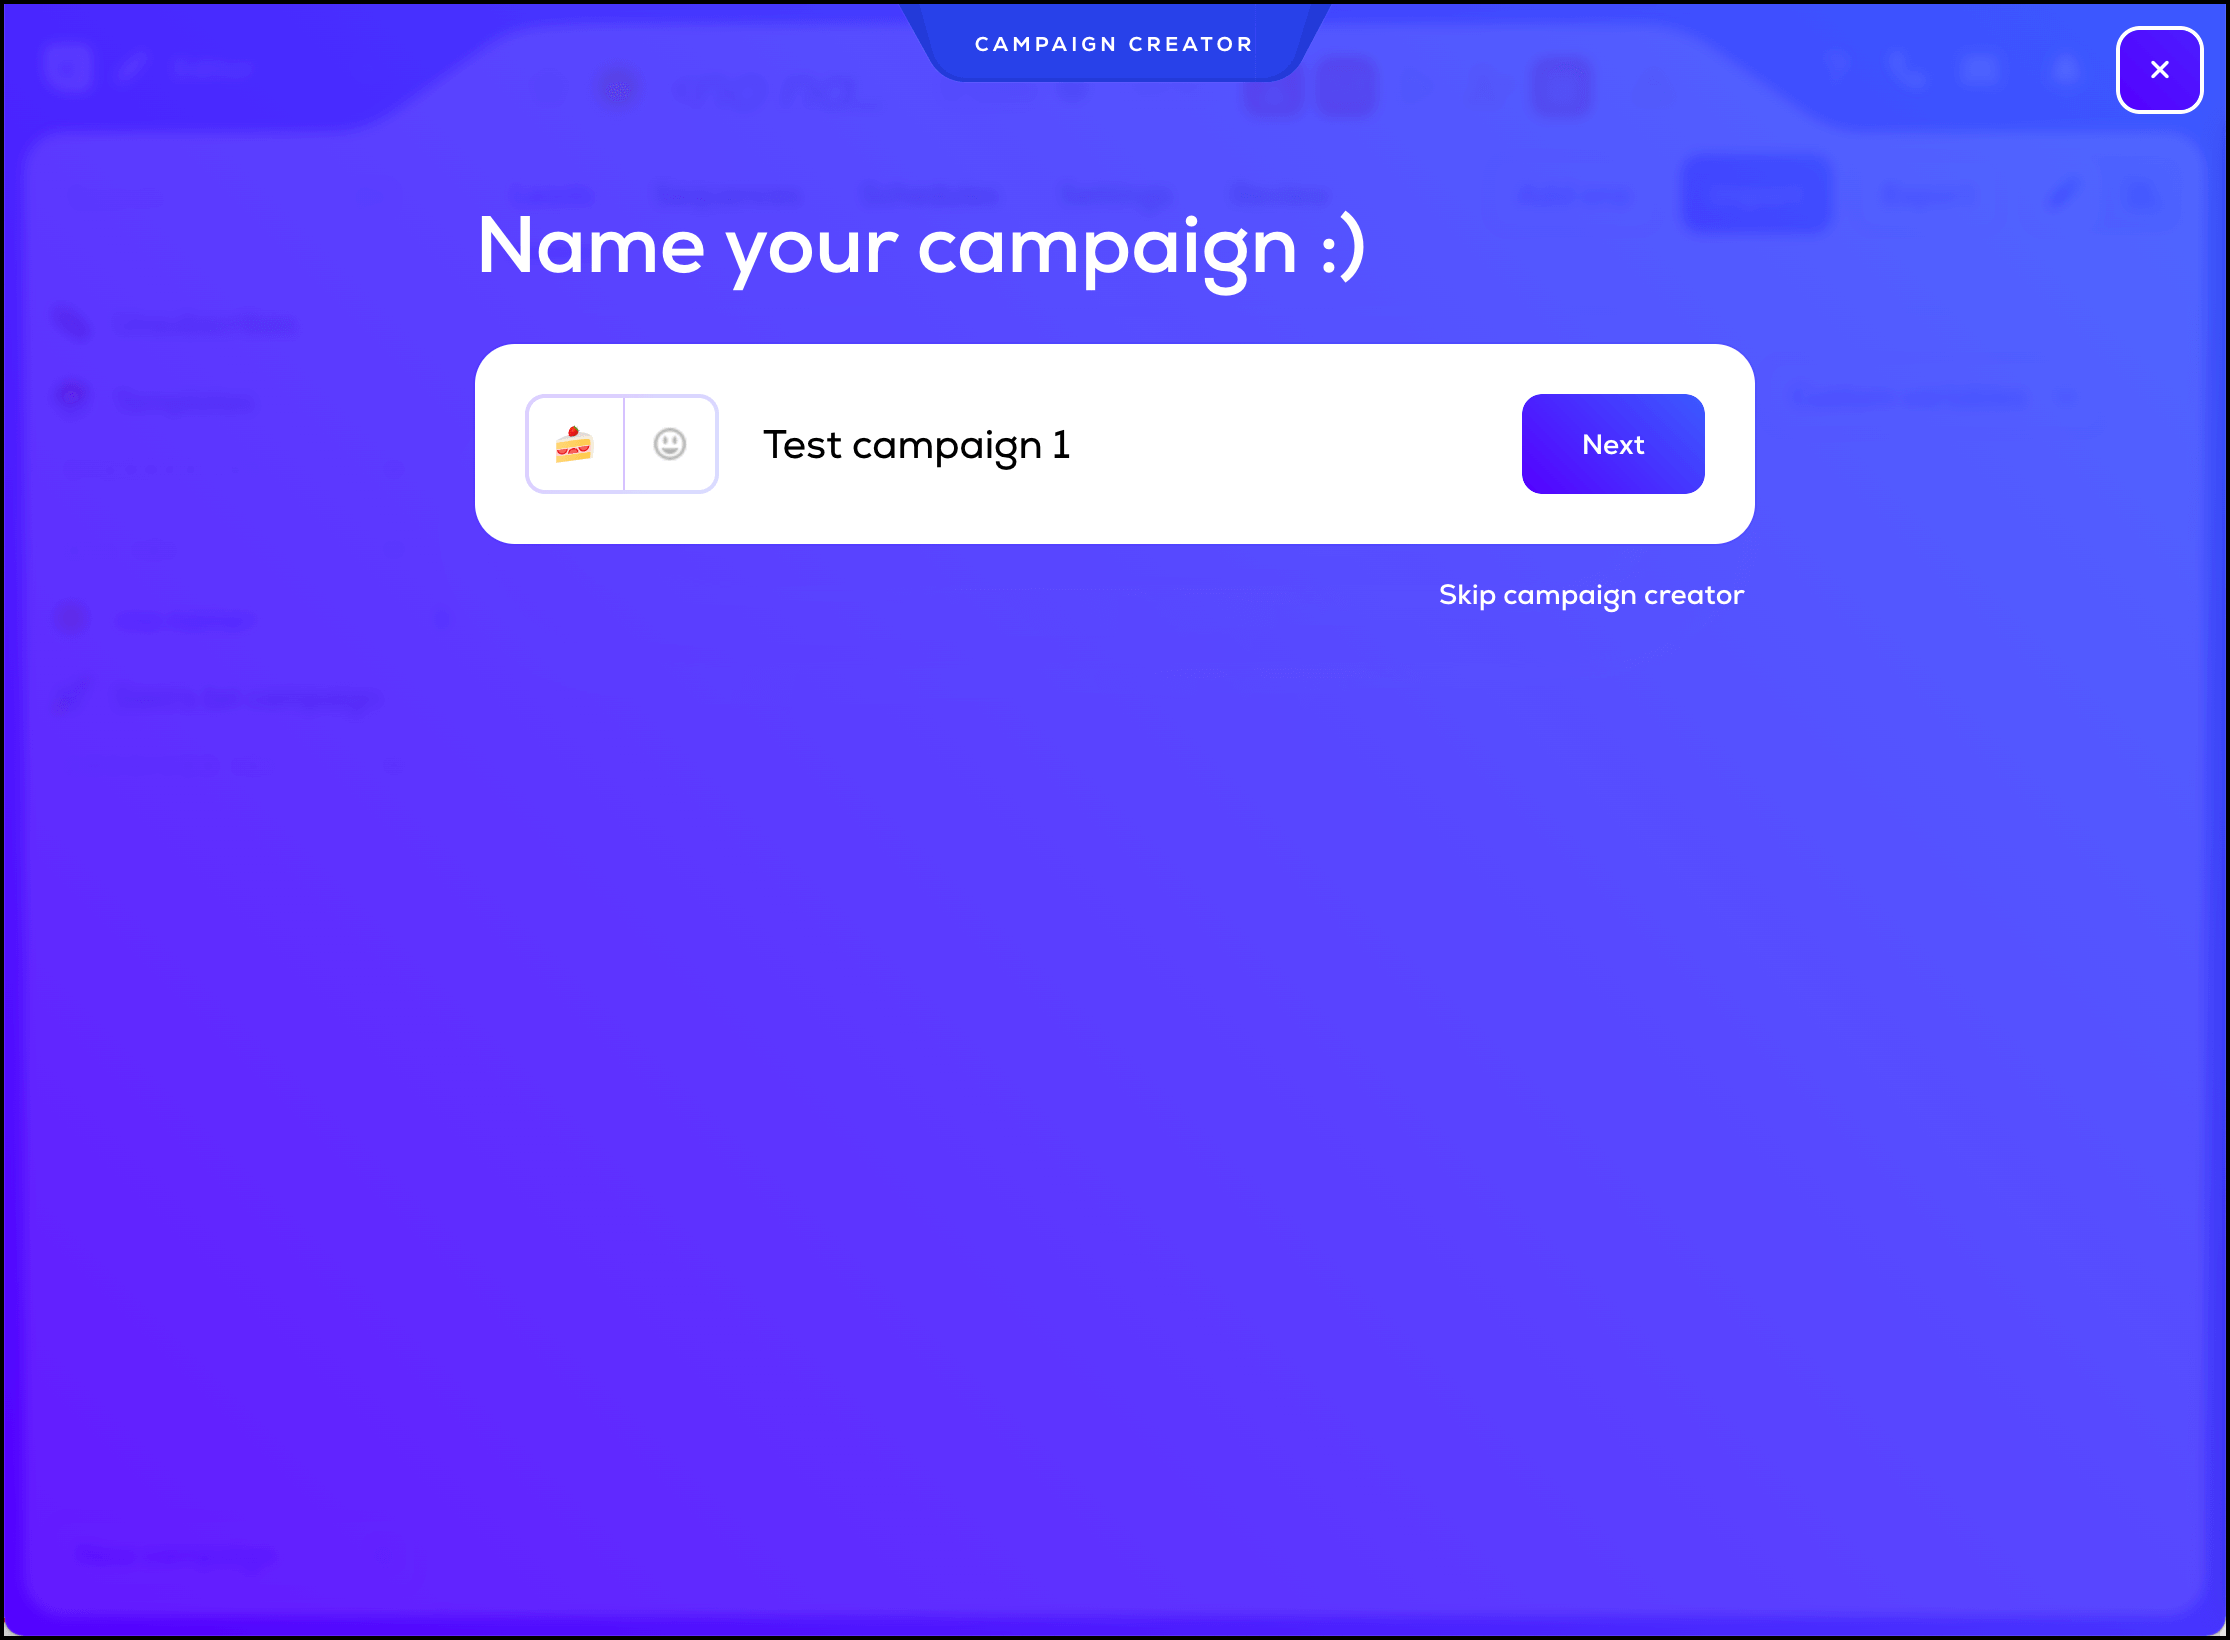 Campaigns receive an emoji